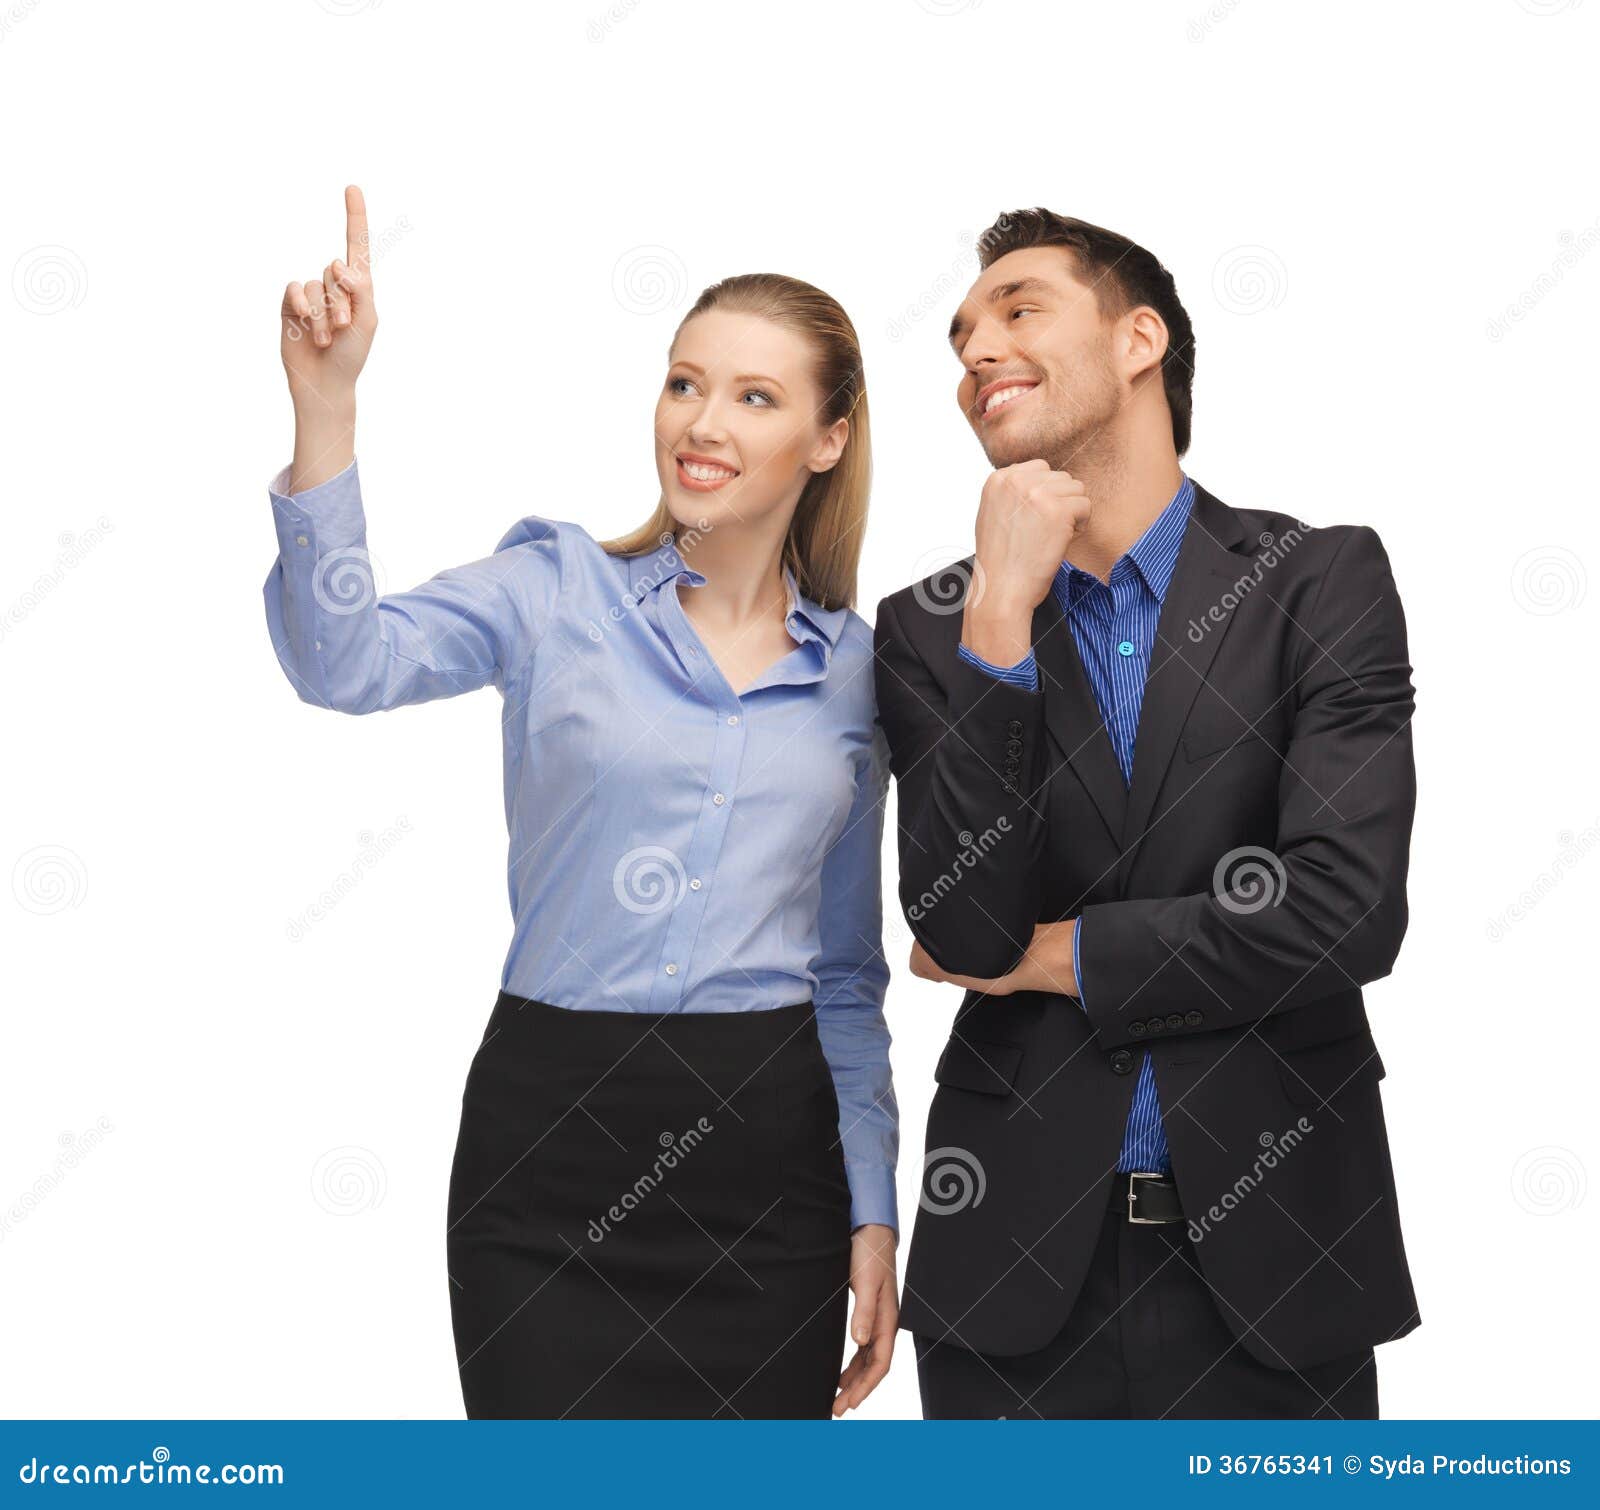 Просто указывает что их было. Мужчина и женщина палец вверх. Женщина указывает мужчине. Женщина указывает пальцем на мужчину. Мужчина и женщина указывают пальцами вверх.